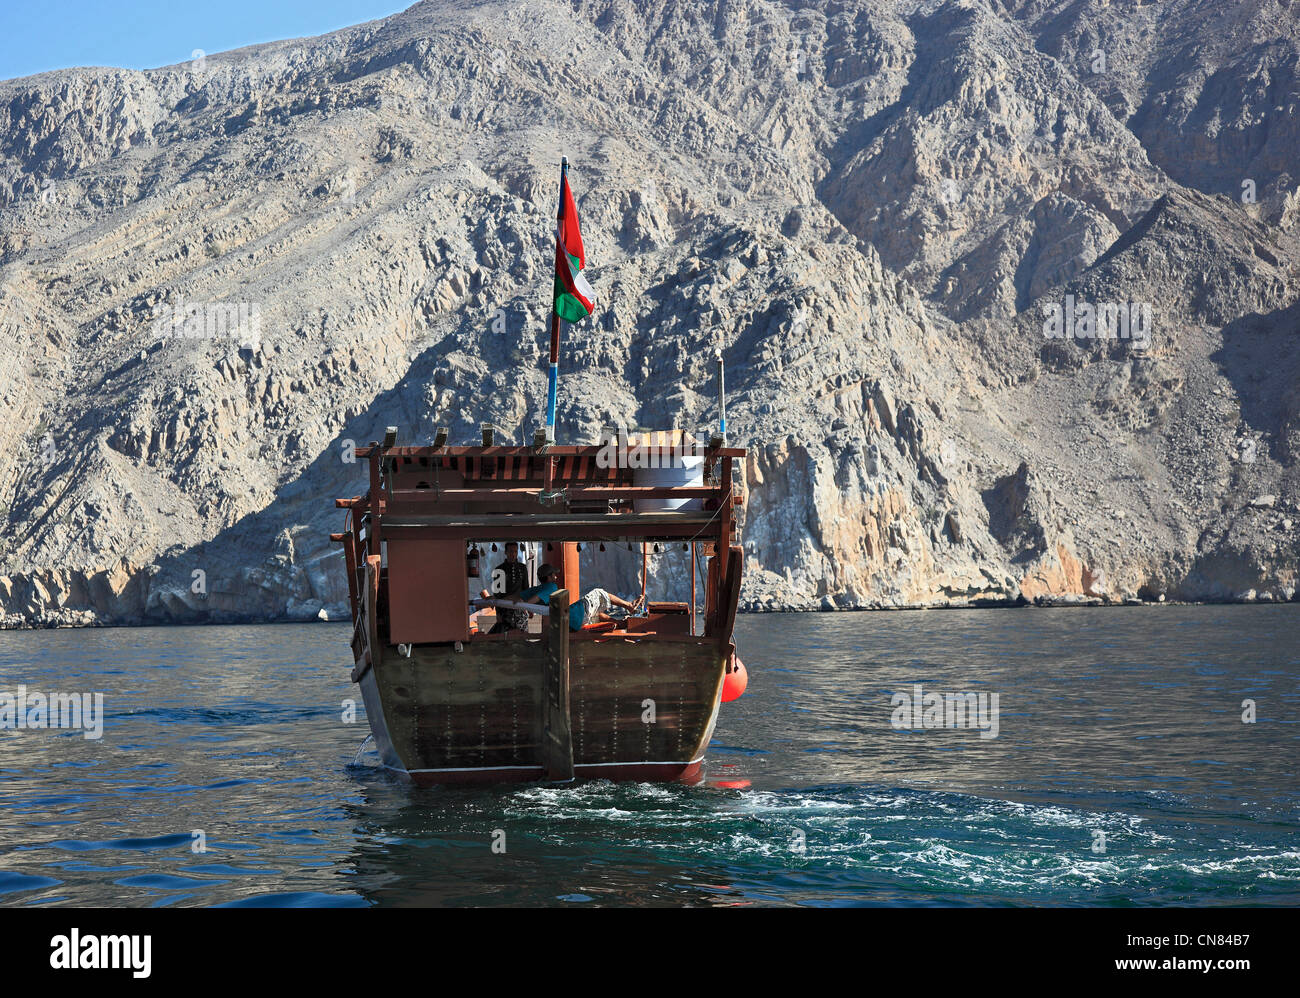 Dhau in den Buchten von Musandam, Shimm-Meerenge, in der omanischen Enklave Musandam, Oman Stock Photo